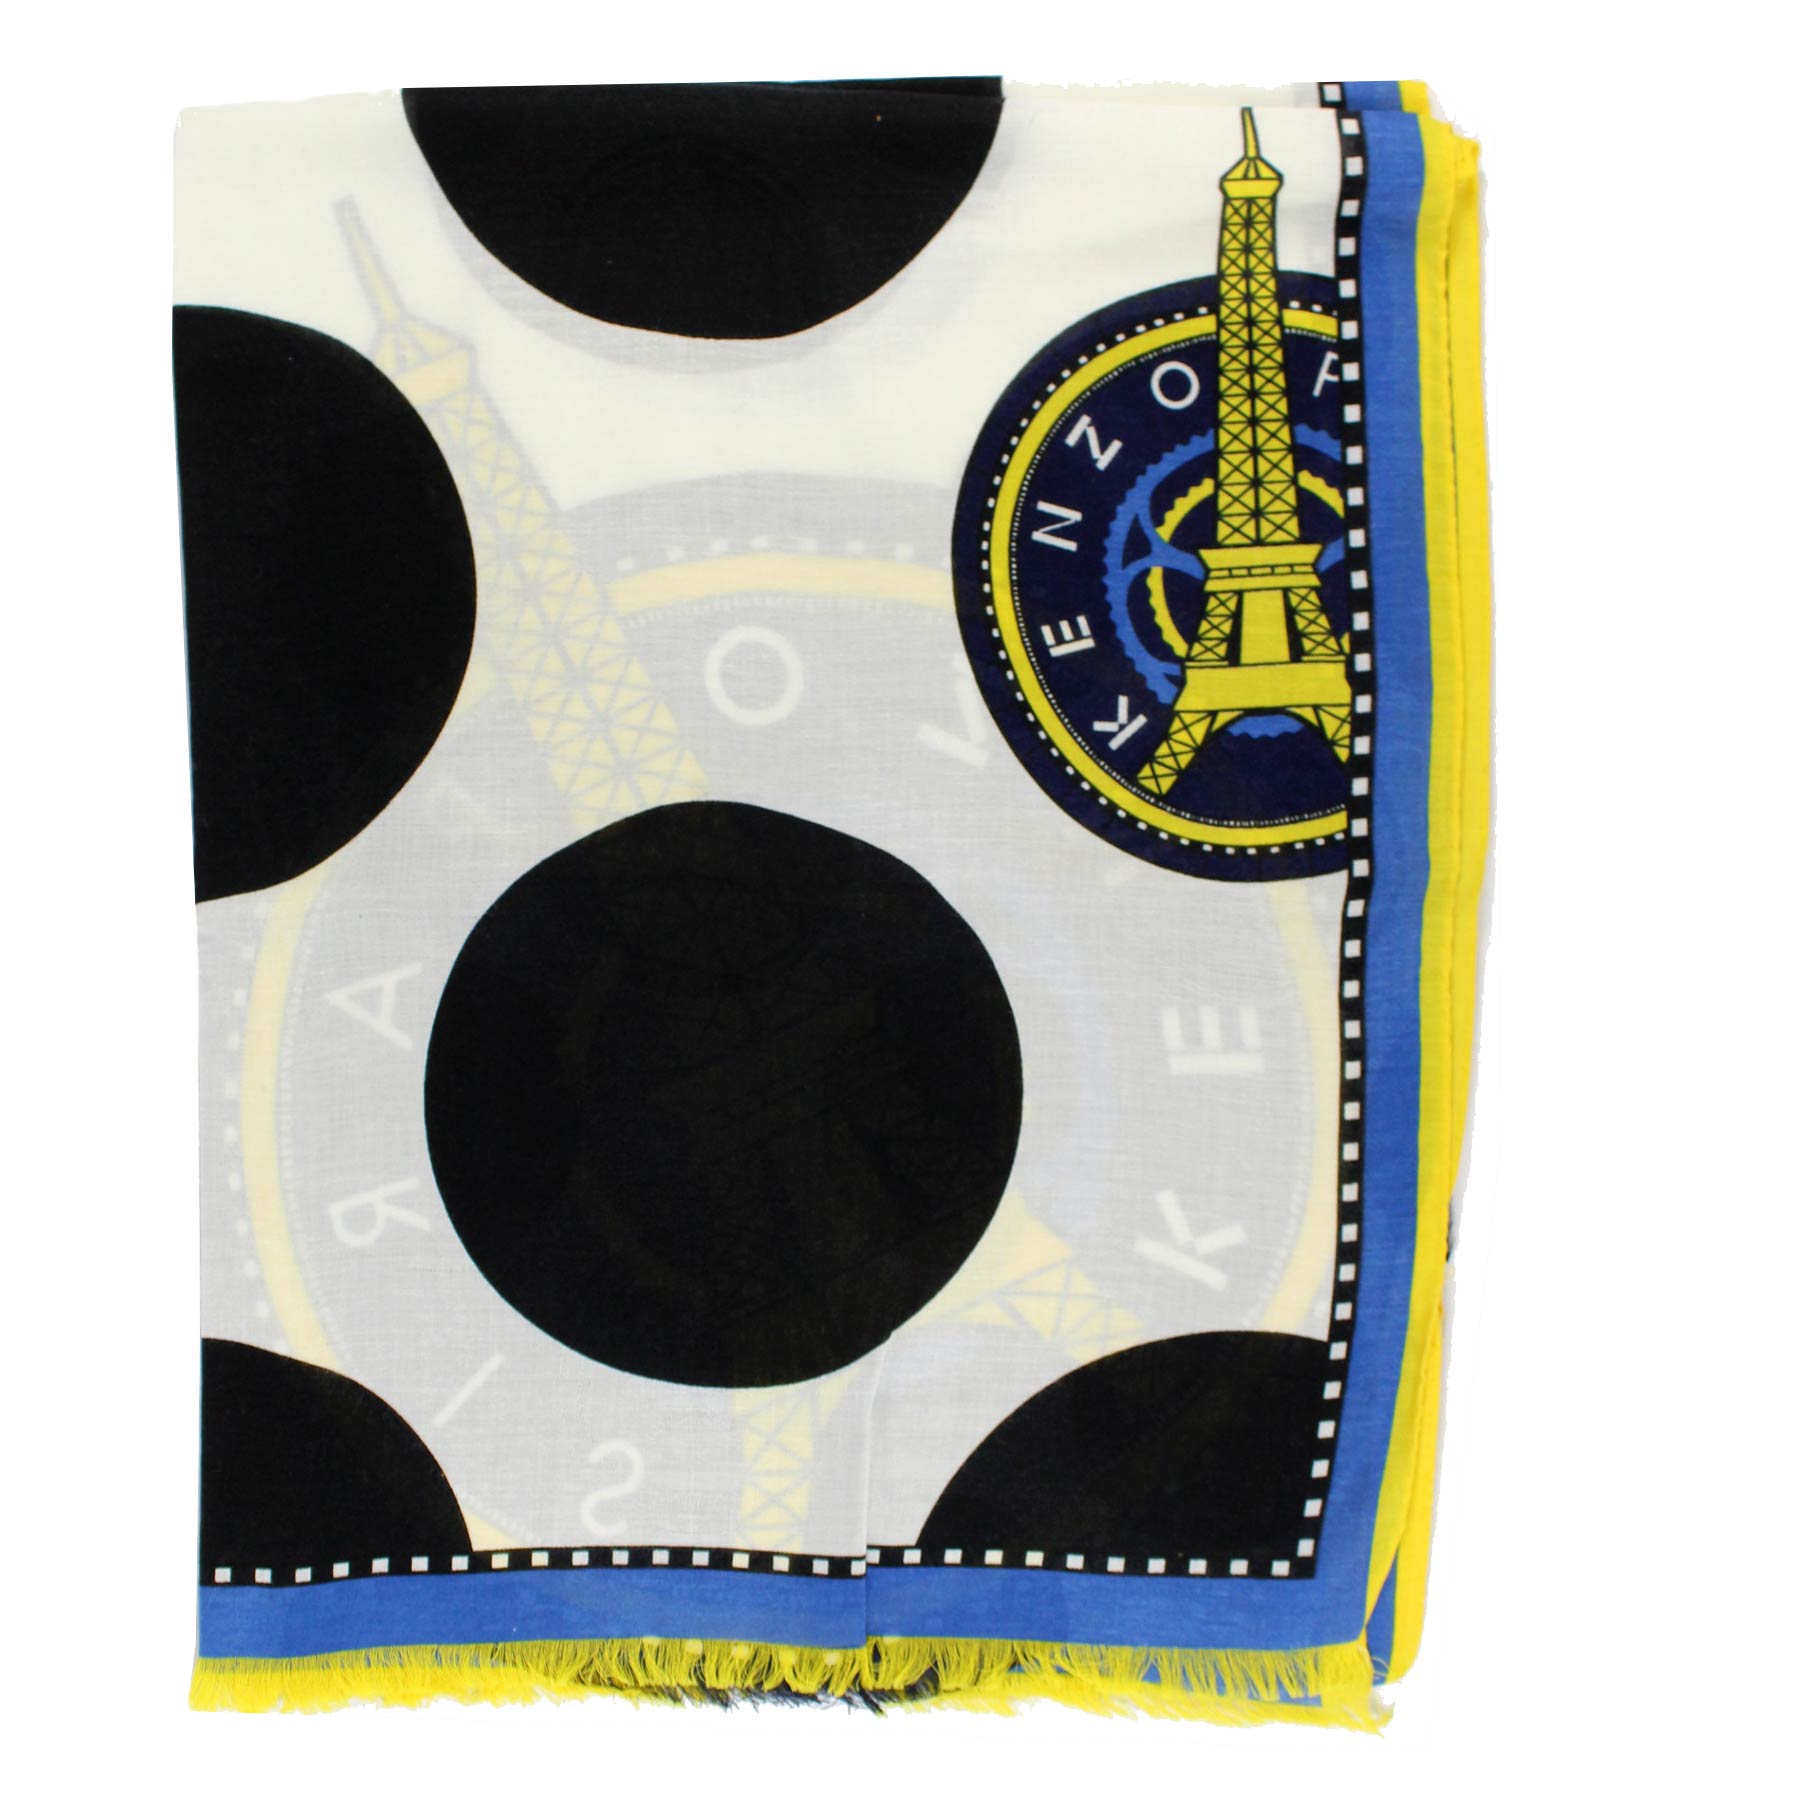 Kenzo Scarf Royal Blue Yellow Polka Dot Design - Cotton Blend Shawl